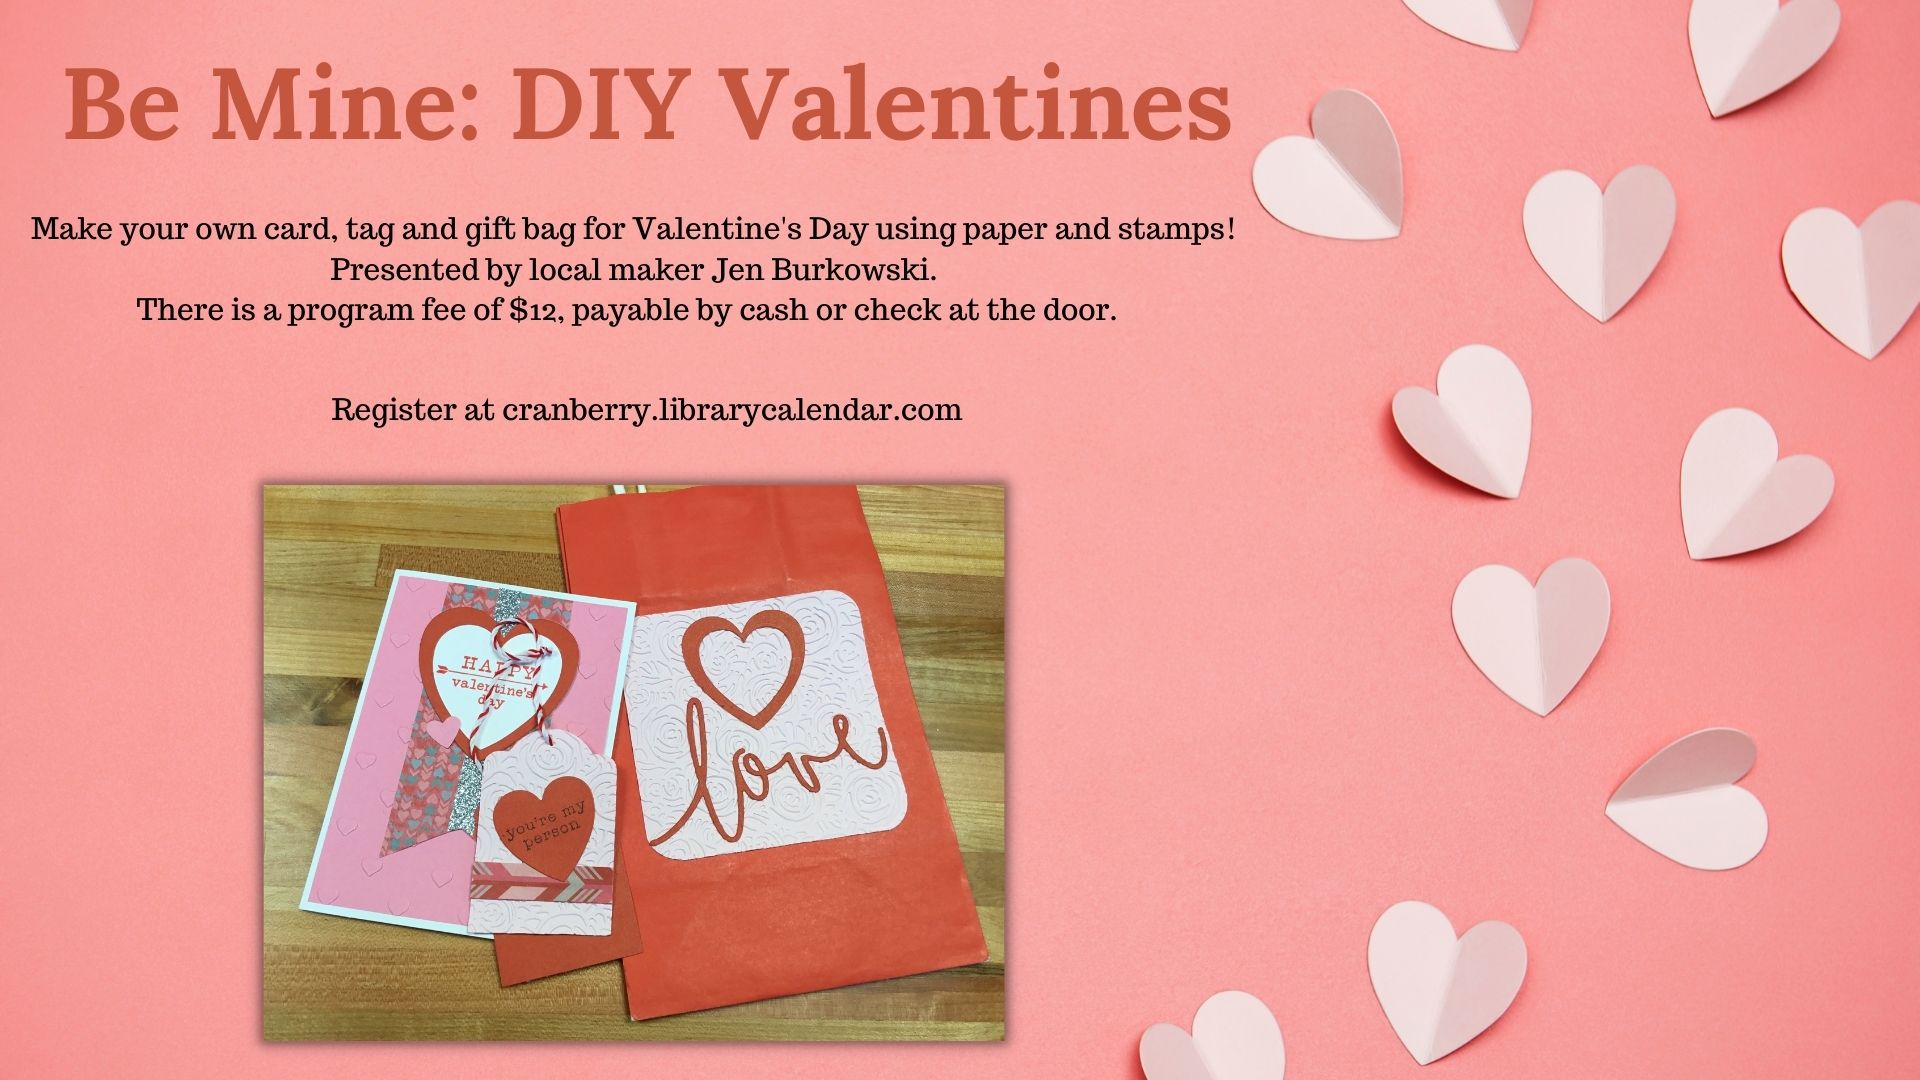 Flyer for DIY Valentines program